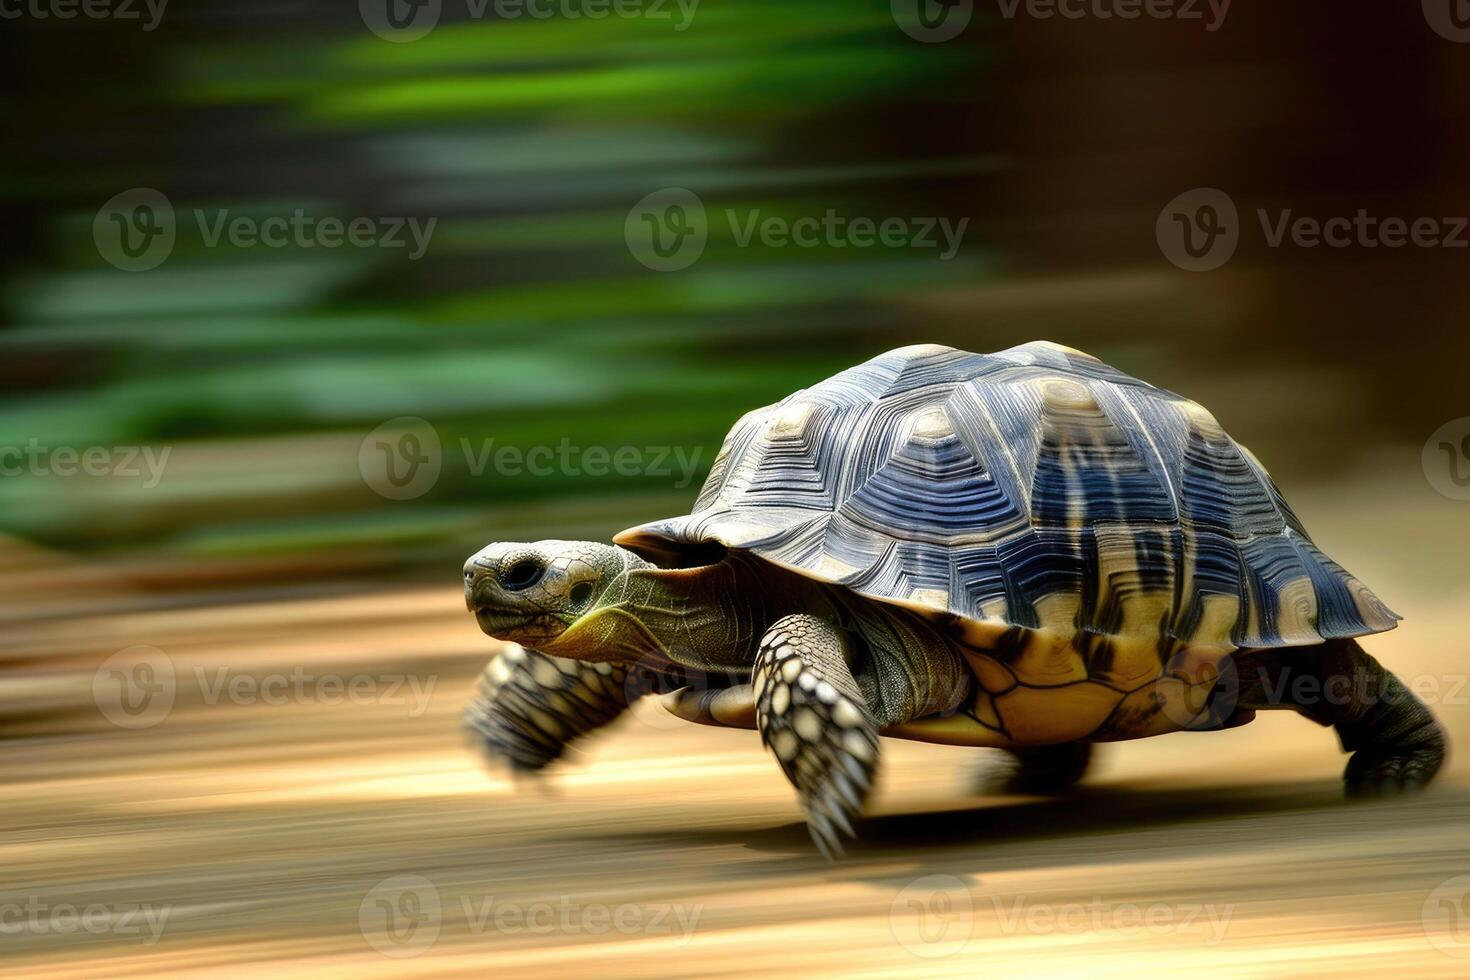 AI generated A turtle that fast runs in blur background .generative AI photo